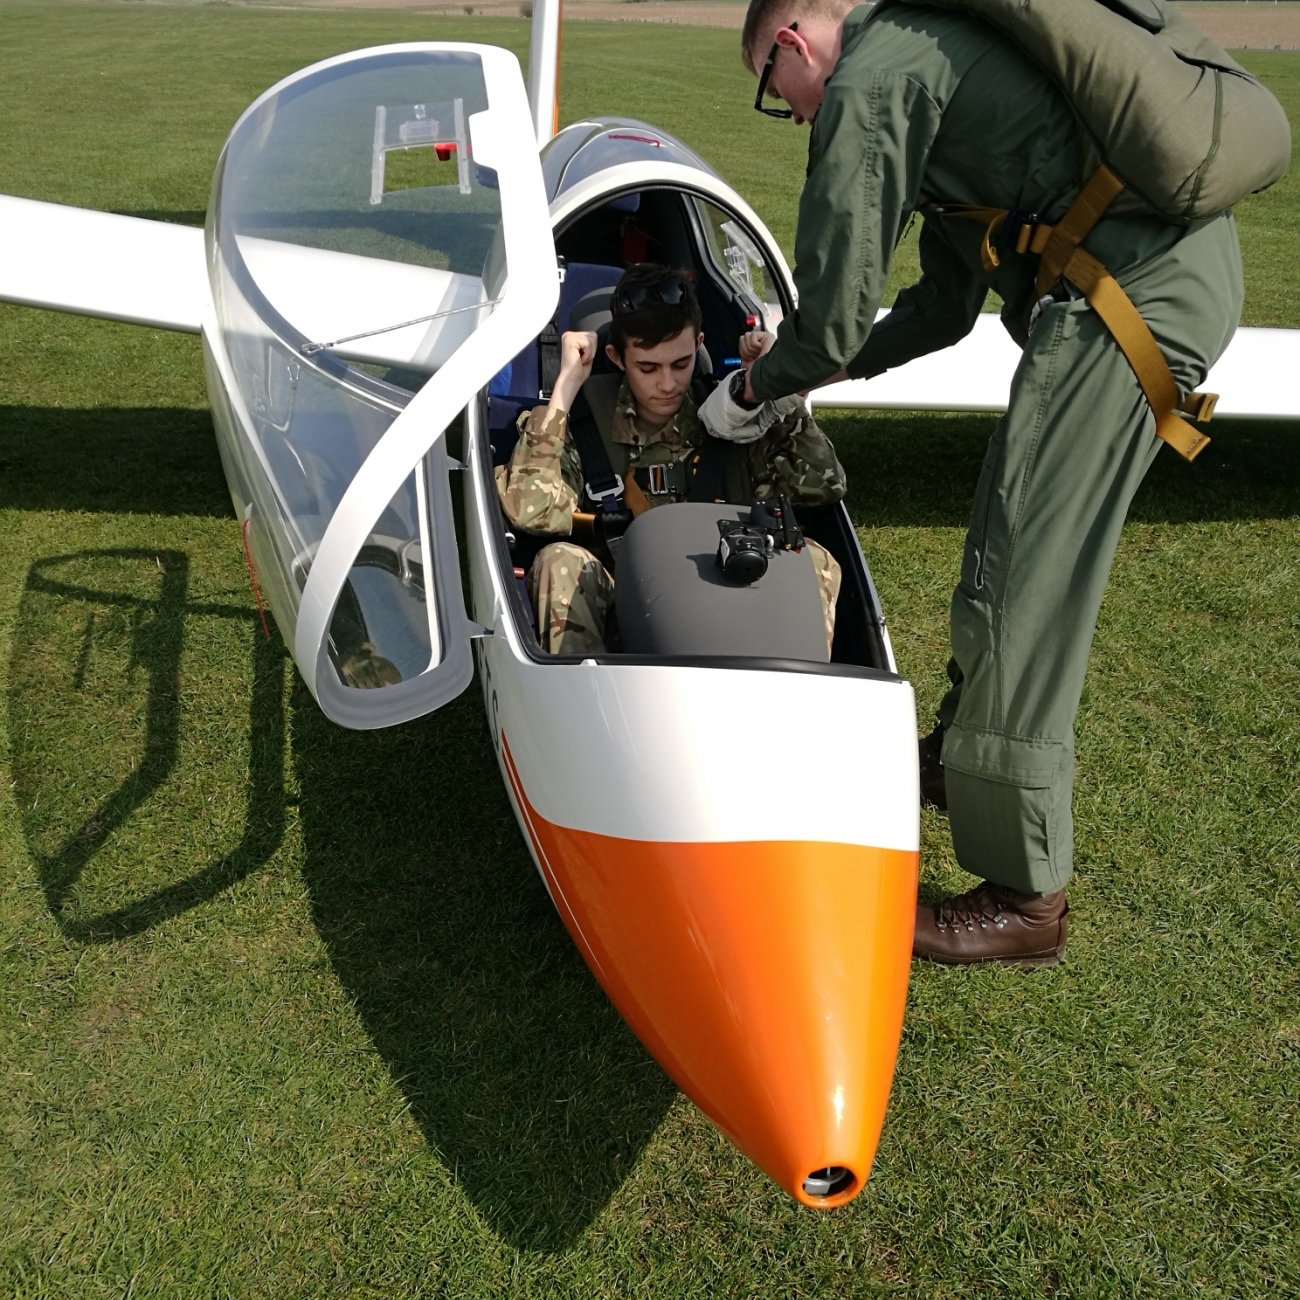 cadet in glider